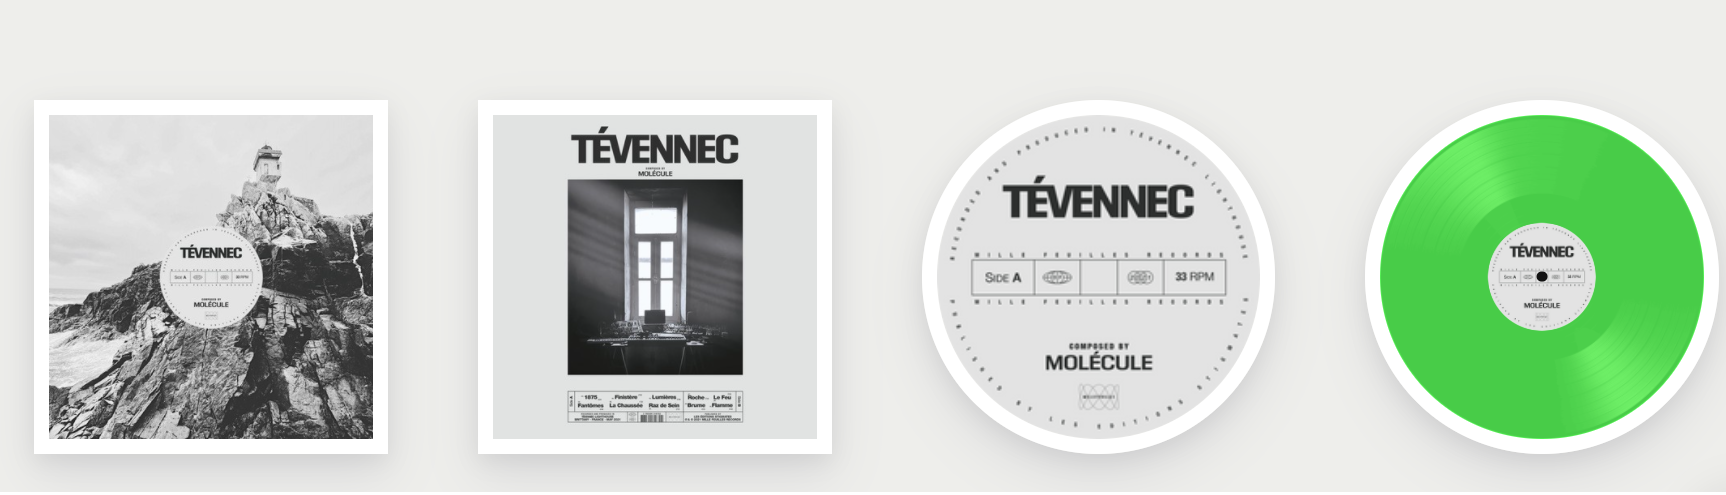 images du vinyle de "Tévennec", dernière sortie de Molécule